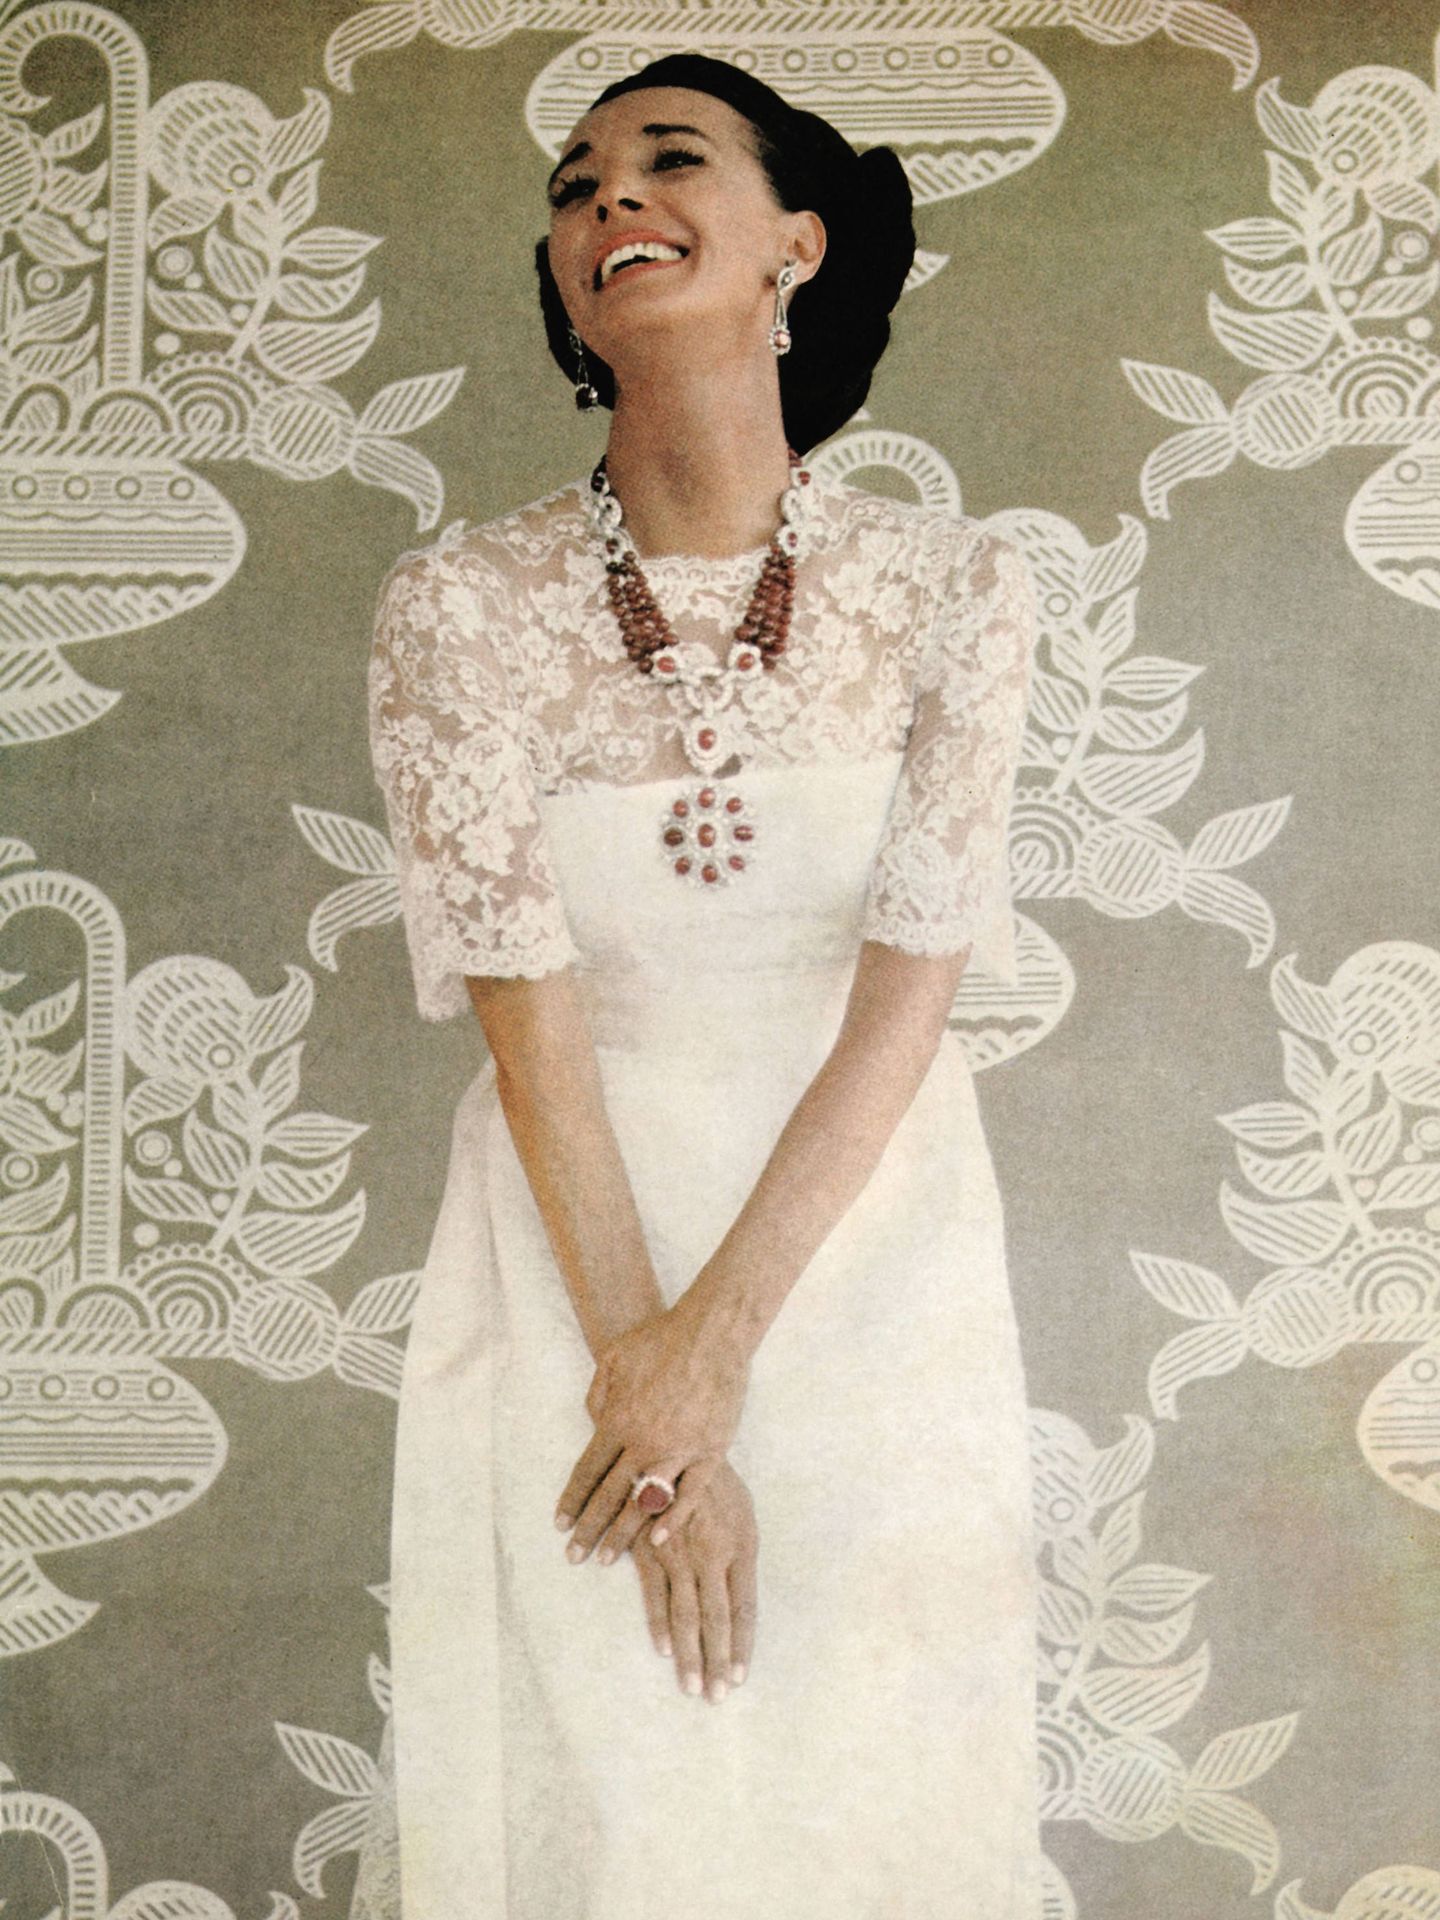 La condesa de Romanones posando con sus joyas en una imagen de los años 70.